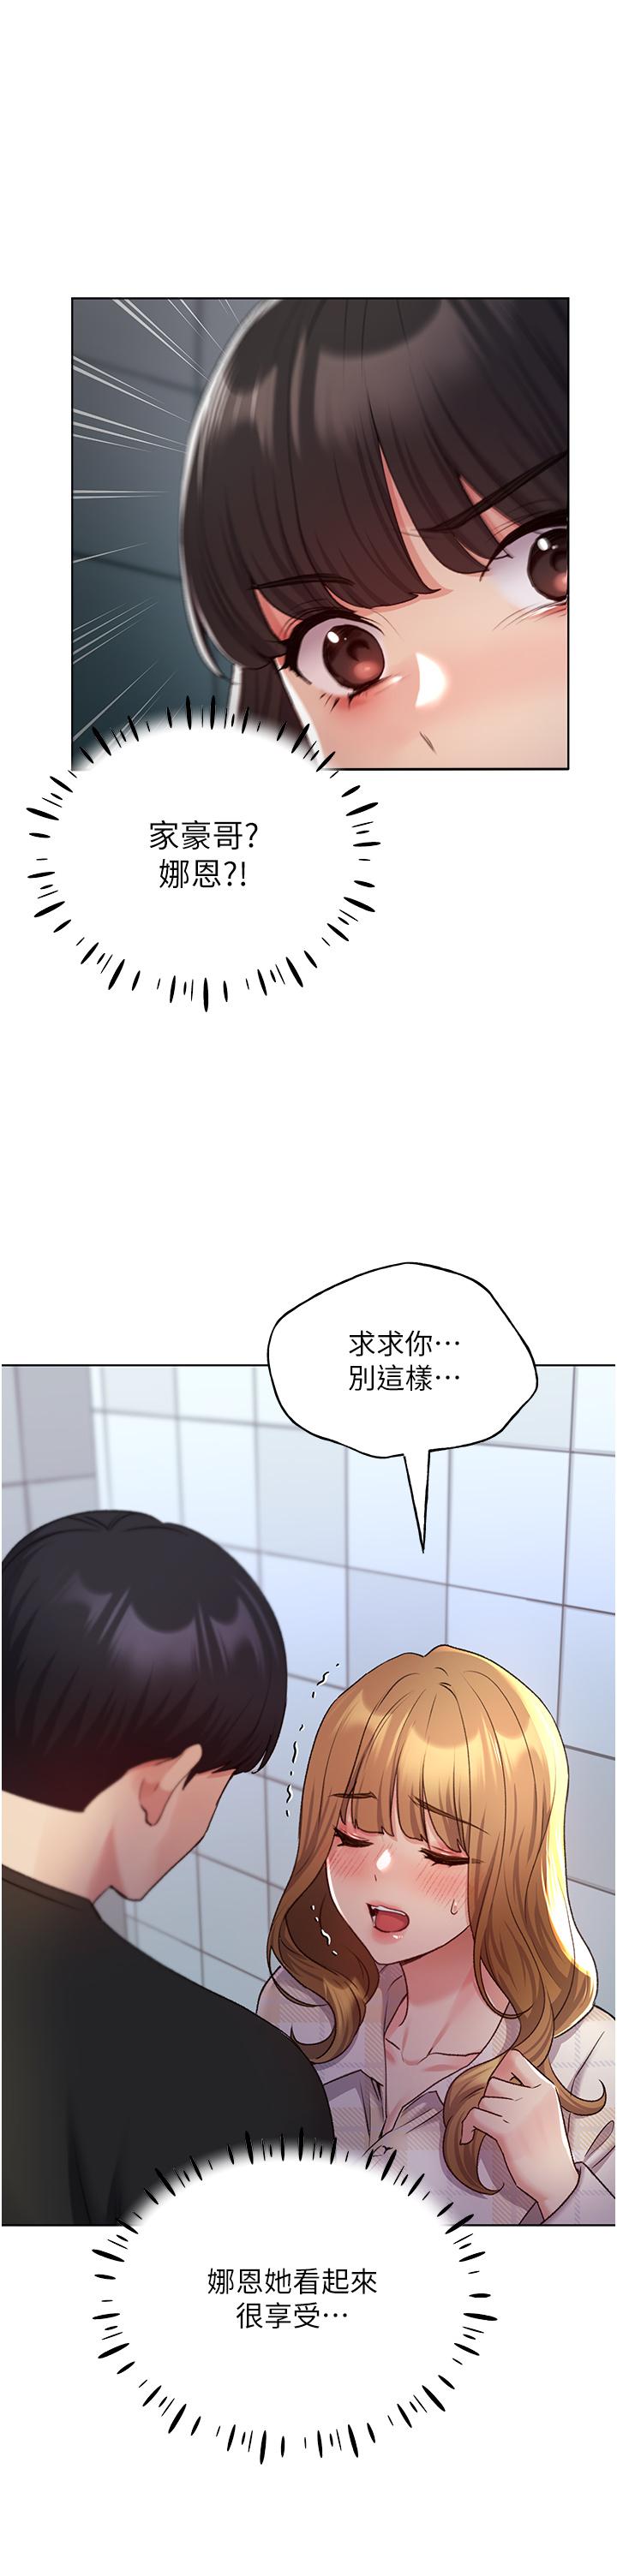 韩国污漫画 野蠻插畫傢 第22话-在学校洗手间打炮 20